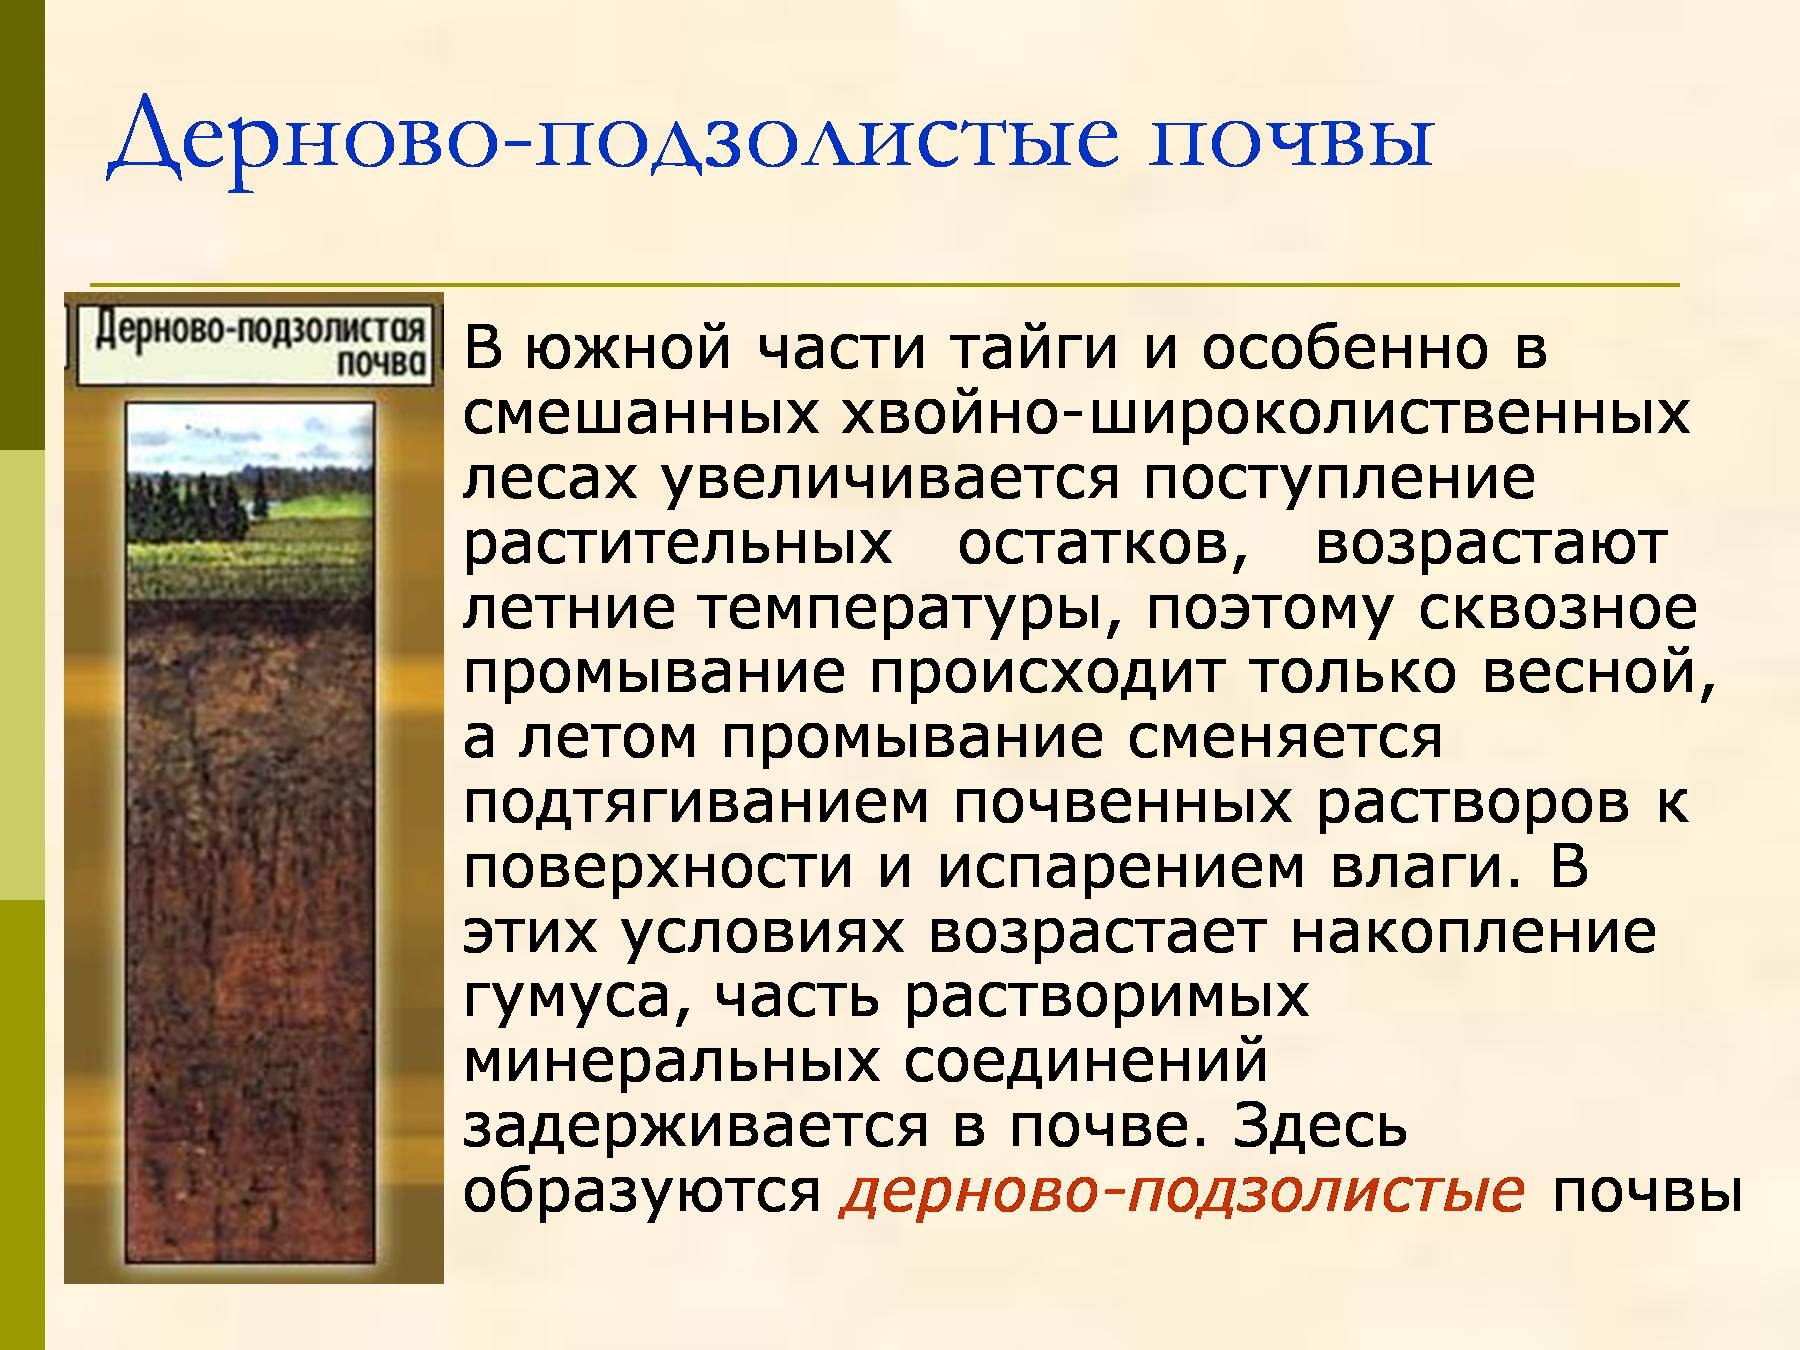 Дуб какие почвы. Дерново-подзолистые почвы тайги. Дерново-подзолистые почвы зоны России. Дерново подзолистые гумус. Дерново-подзолистые почвы климат.